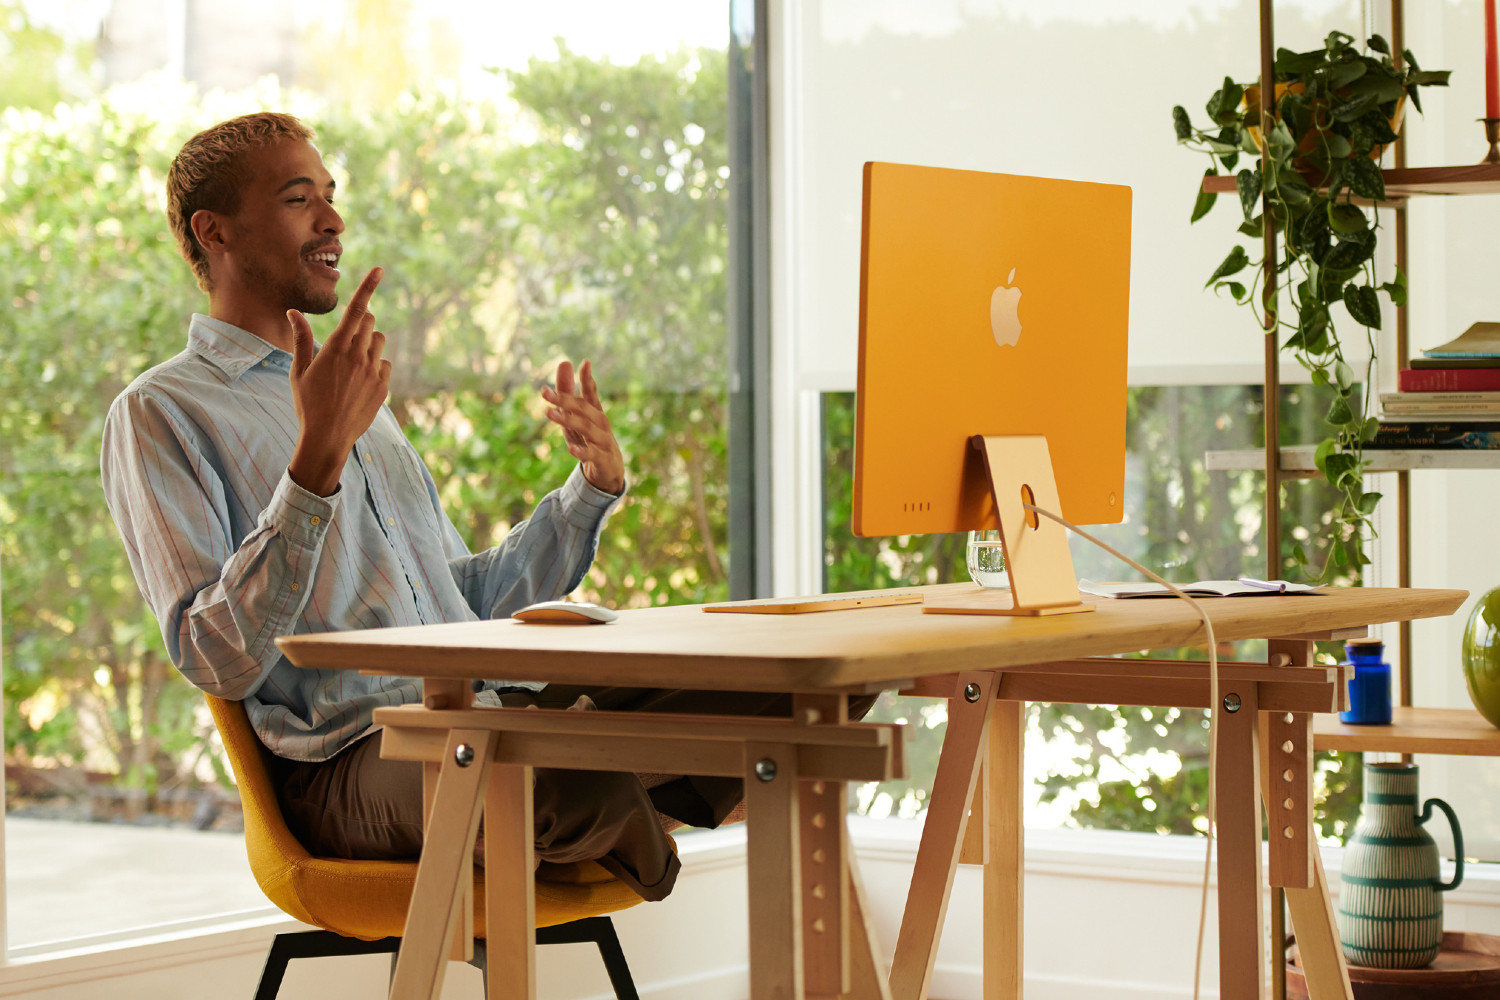 رجل يجلس على مكتب أمام جهاز M1 iMac.  وخلفه نافذة زجاجية كبيرة ومجموعة من الأرفف تحتوي على كتب ونباتات وزخارف.